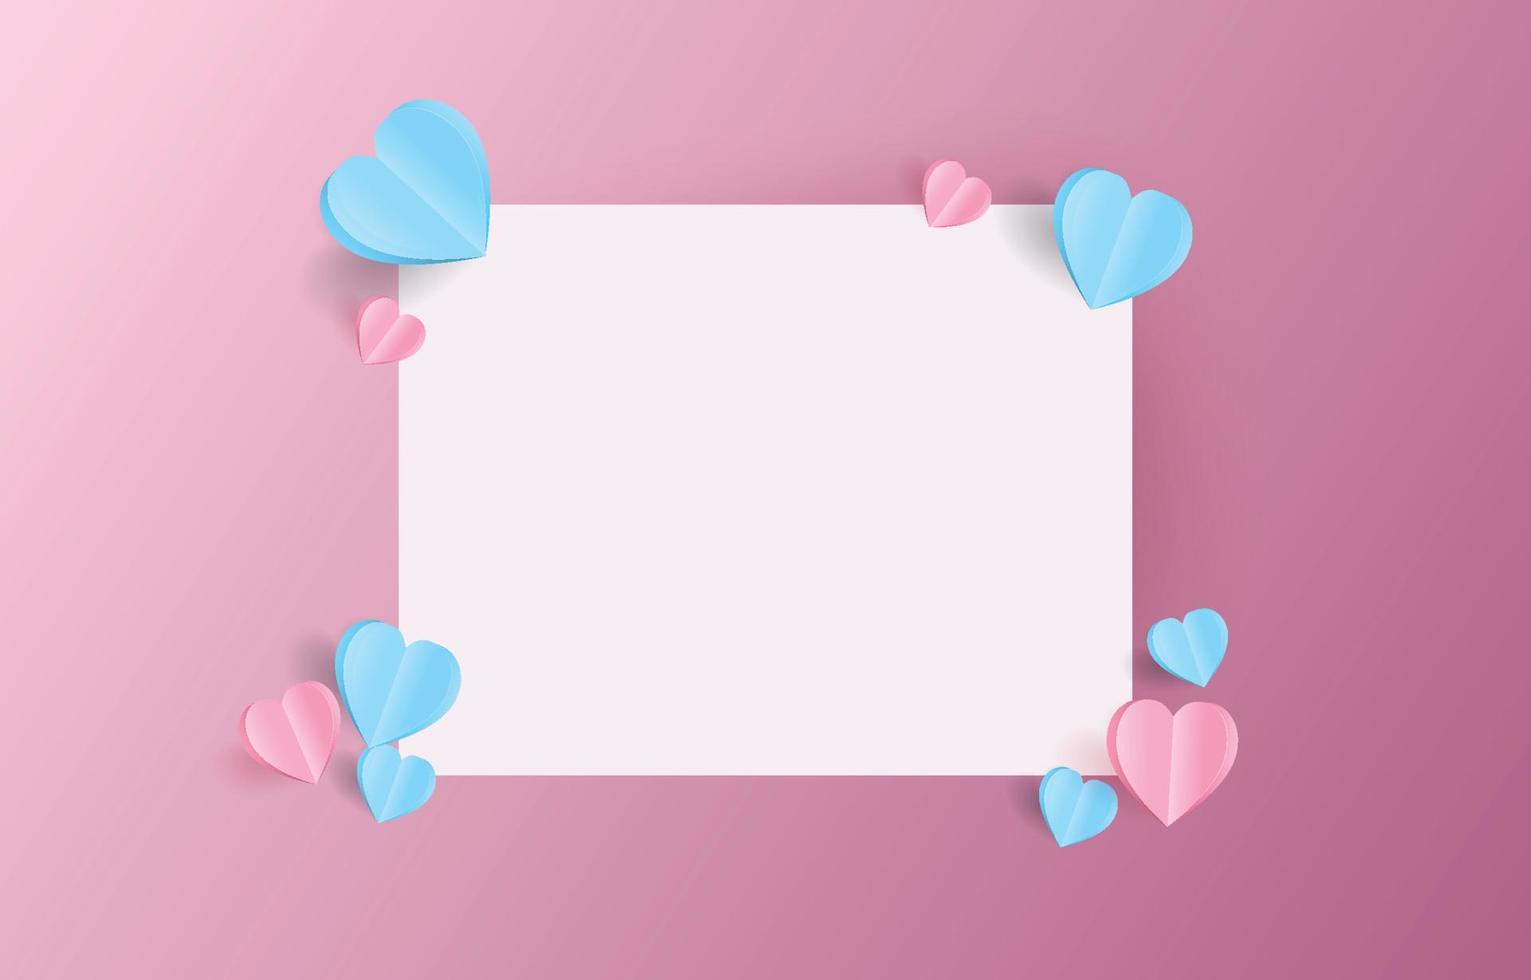 mockup di carta per lettere di san valentino decorato con taglio di carta a forma di cuore rosa e blu, illustrazione per san valentino o giorno dell'amore, busta vettoriale. vettore